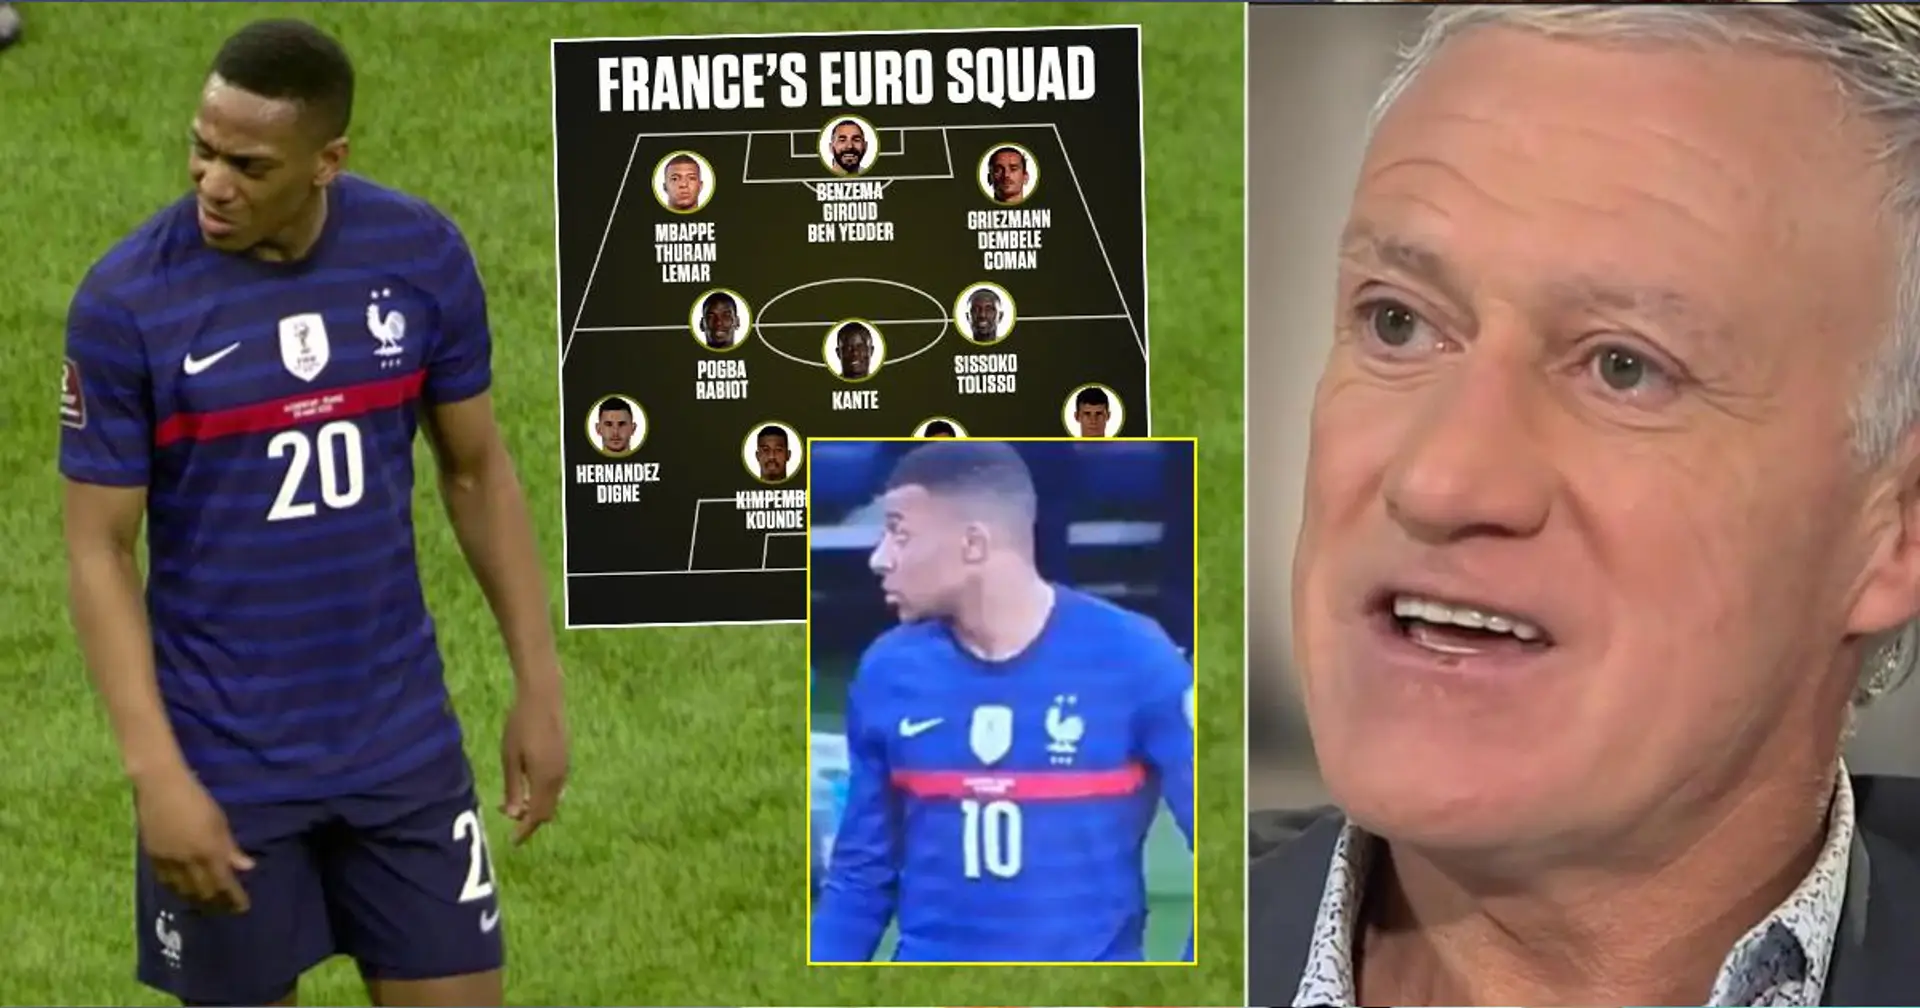 El seleccionador de Francia, Didier Deschamps, revela por qué no incluyó a Anthony Martial en la selección de la Eurocopa 2020